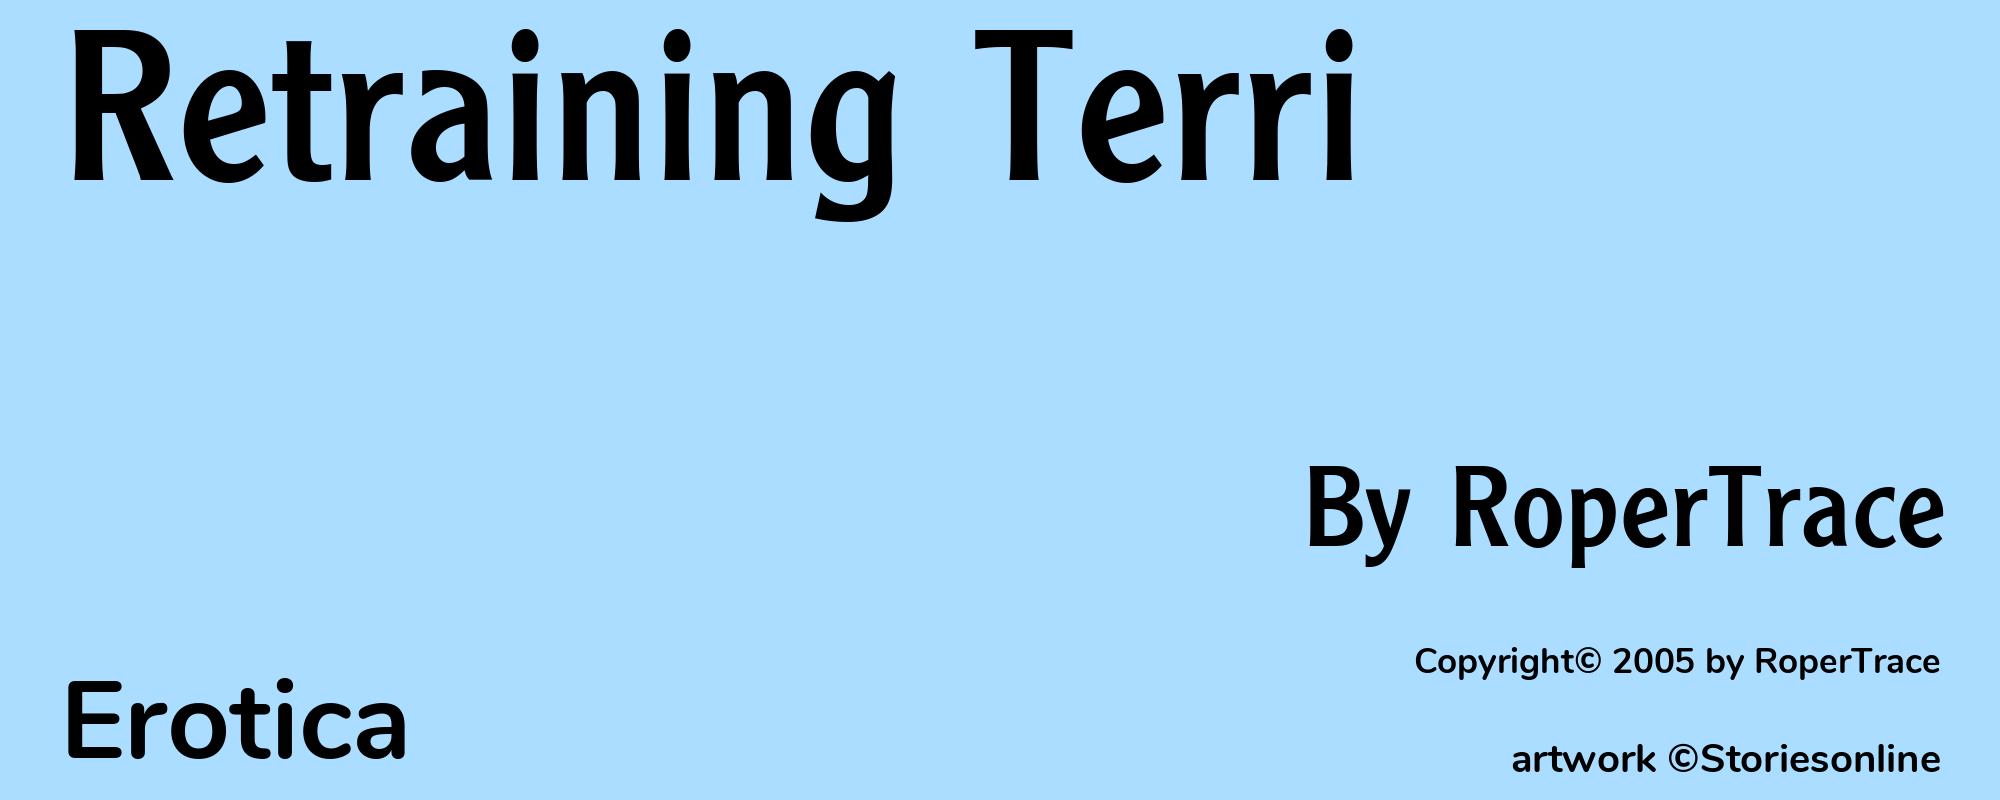 Retraining Terri - Cover